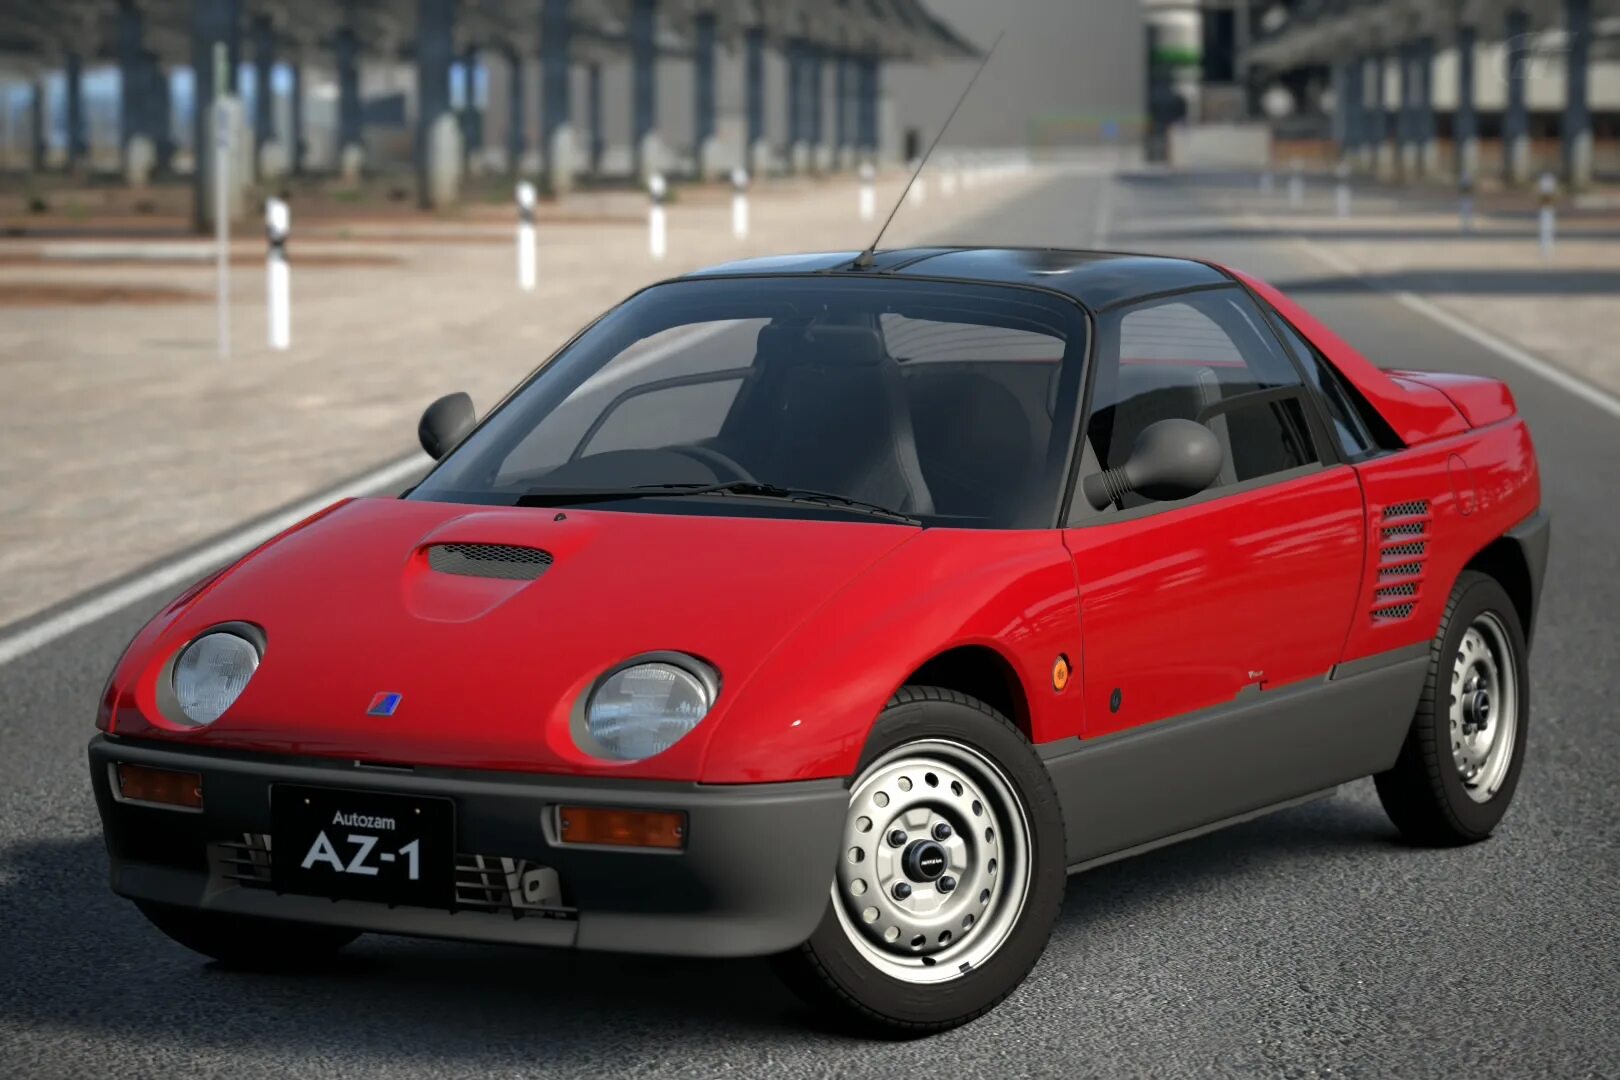 Mazda az. Mazda Autozam az-1. Mazda Autozam az-1 1992. Mazda Autozam az-1 '92. Suzuki Autozam az-1.